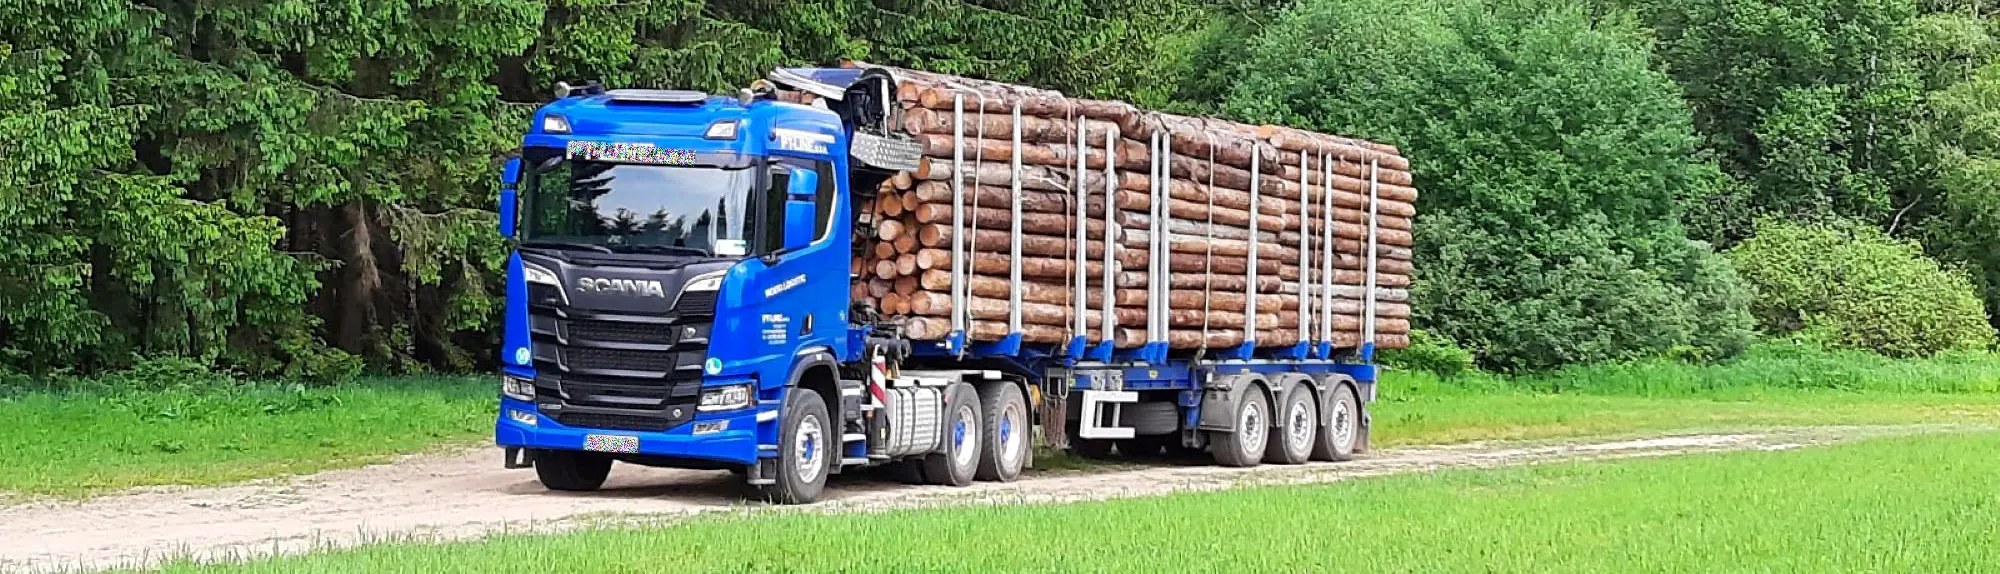 Mit Trendholz vom Wald zur Holzindustrie